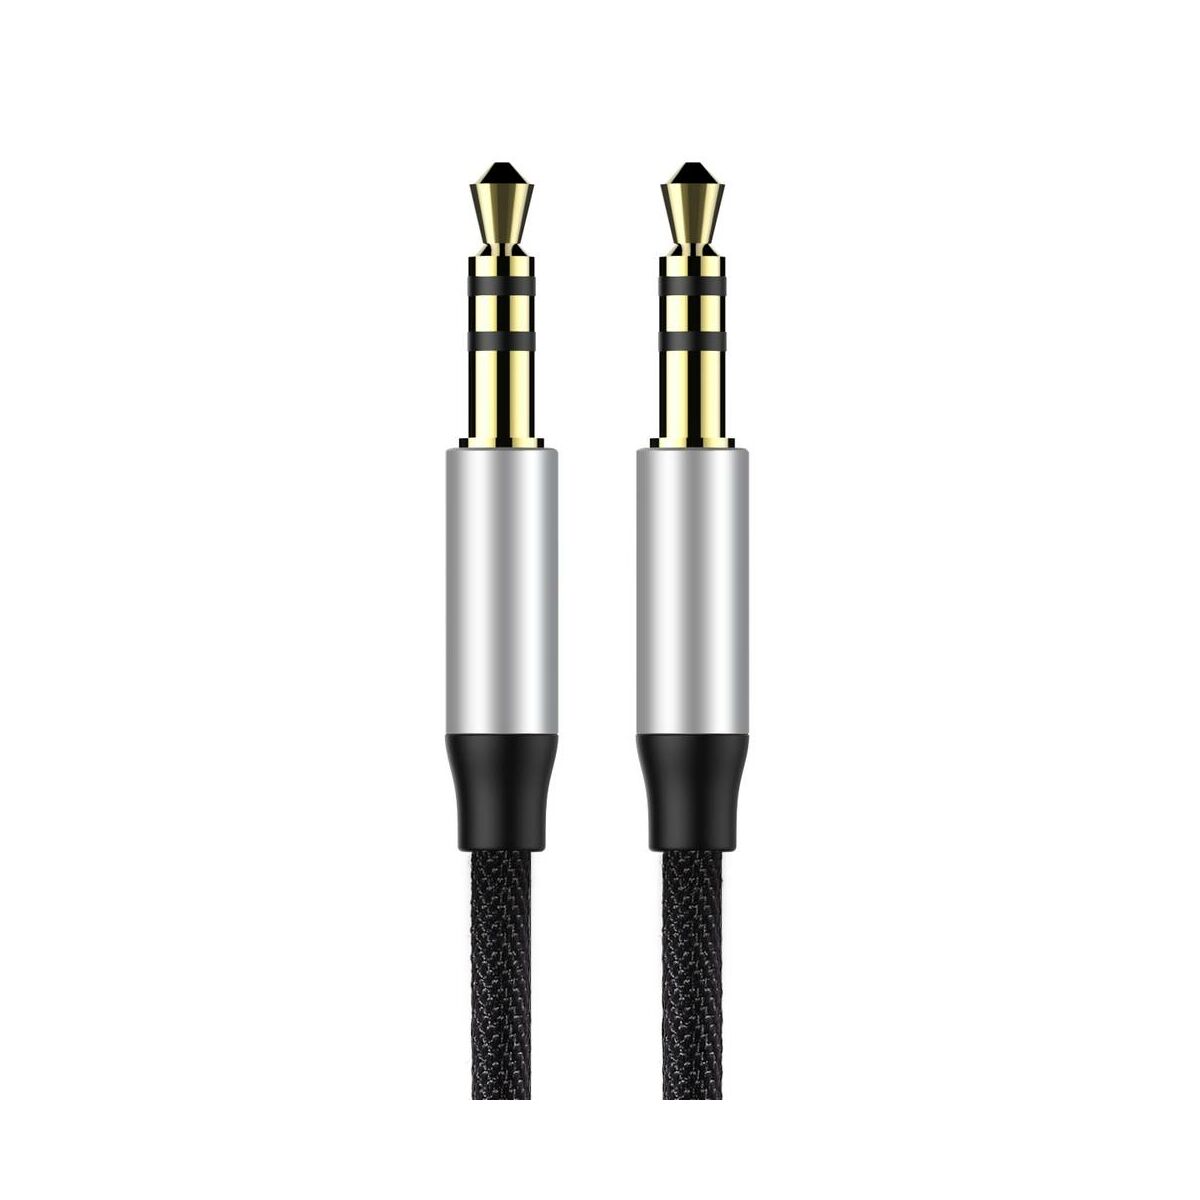 Kép 3/9 - Baseus Audio kábel, Yiven M30 AUX 1.5m, ezüst/fekete (CAM30-CS1)